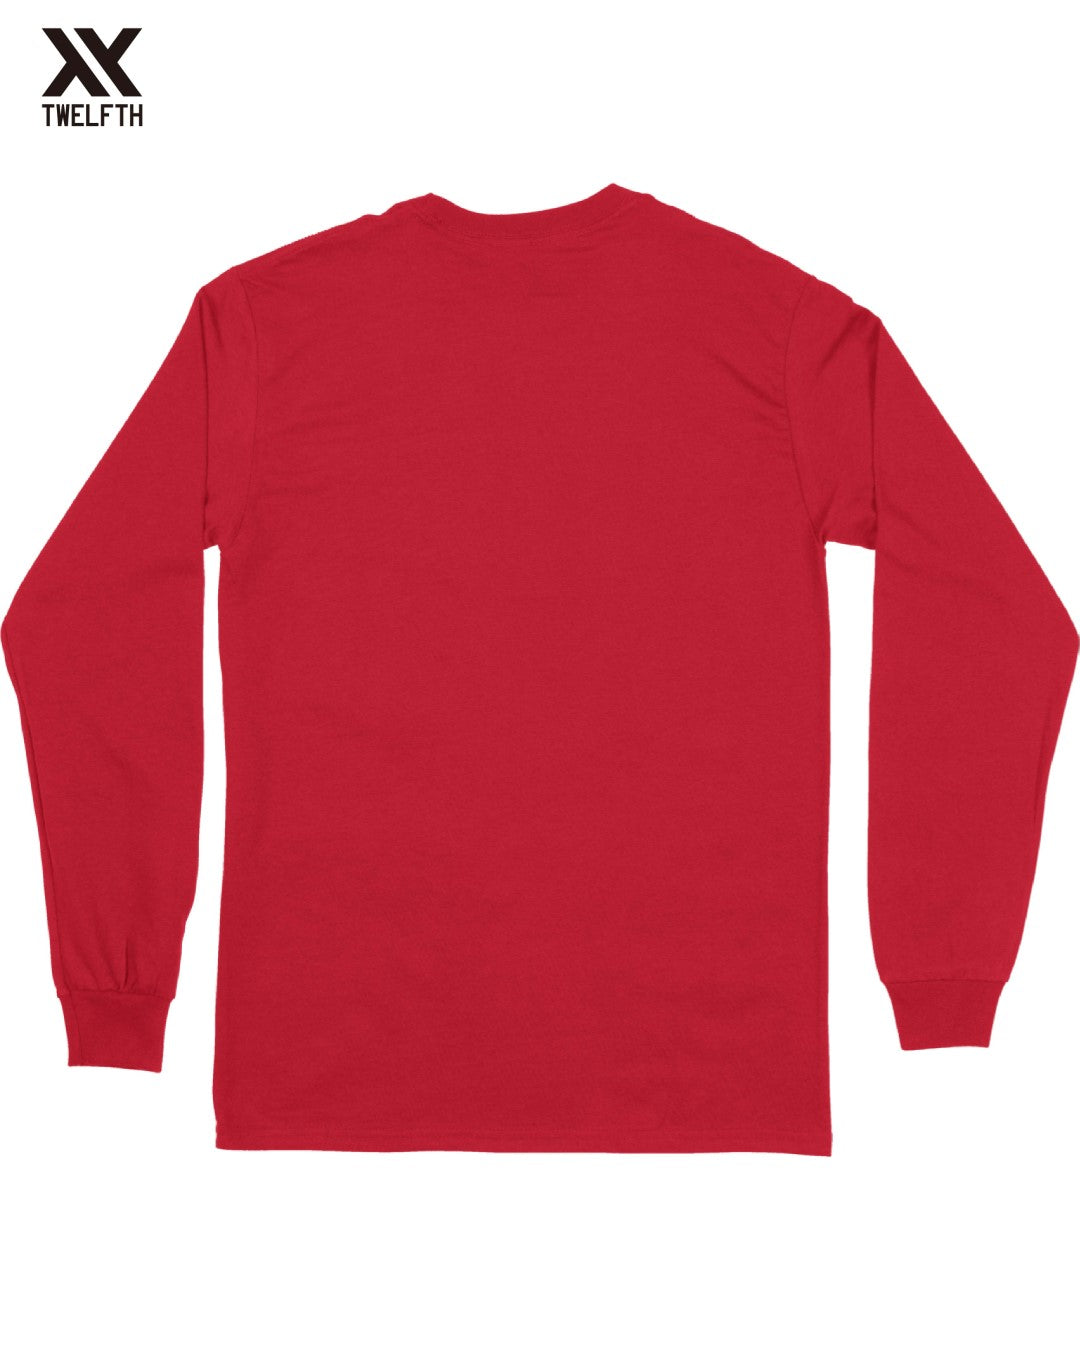 England Crest T-Shirt - Mens - Long Sleeve